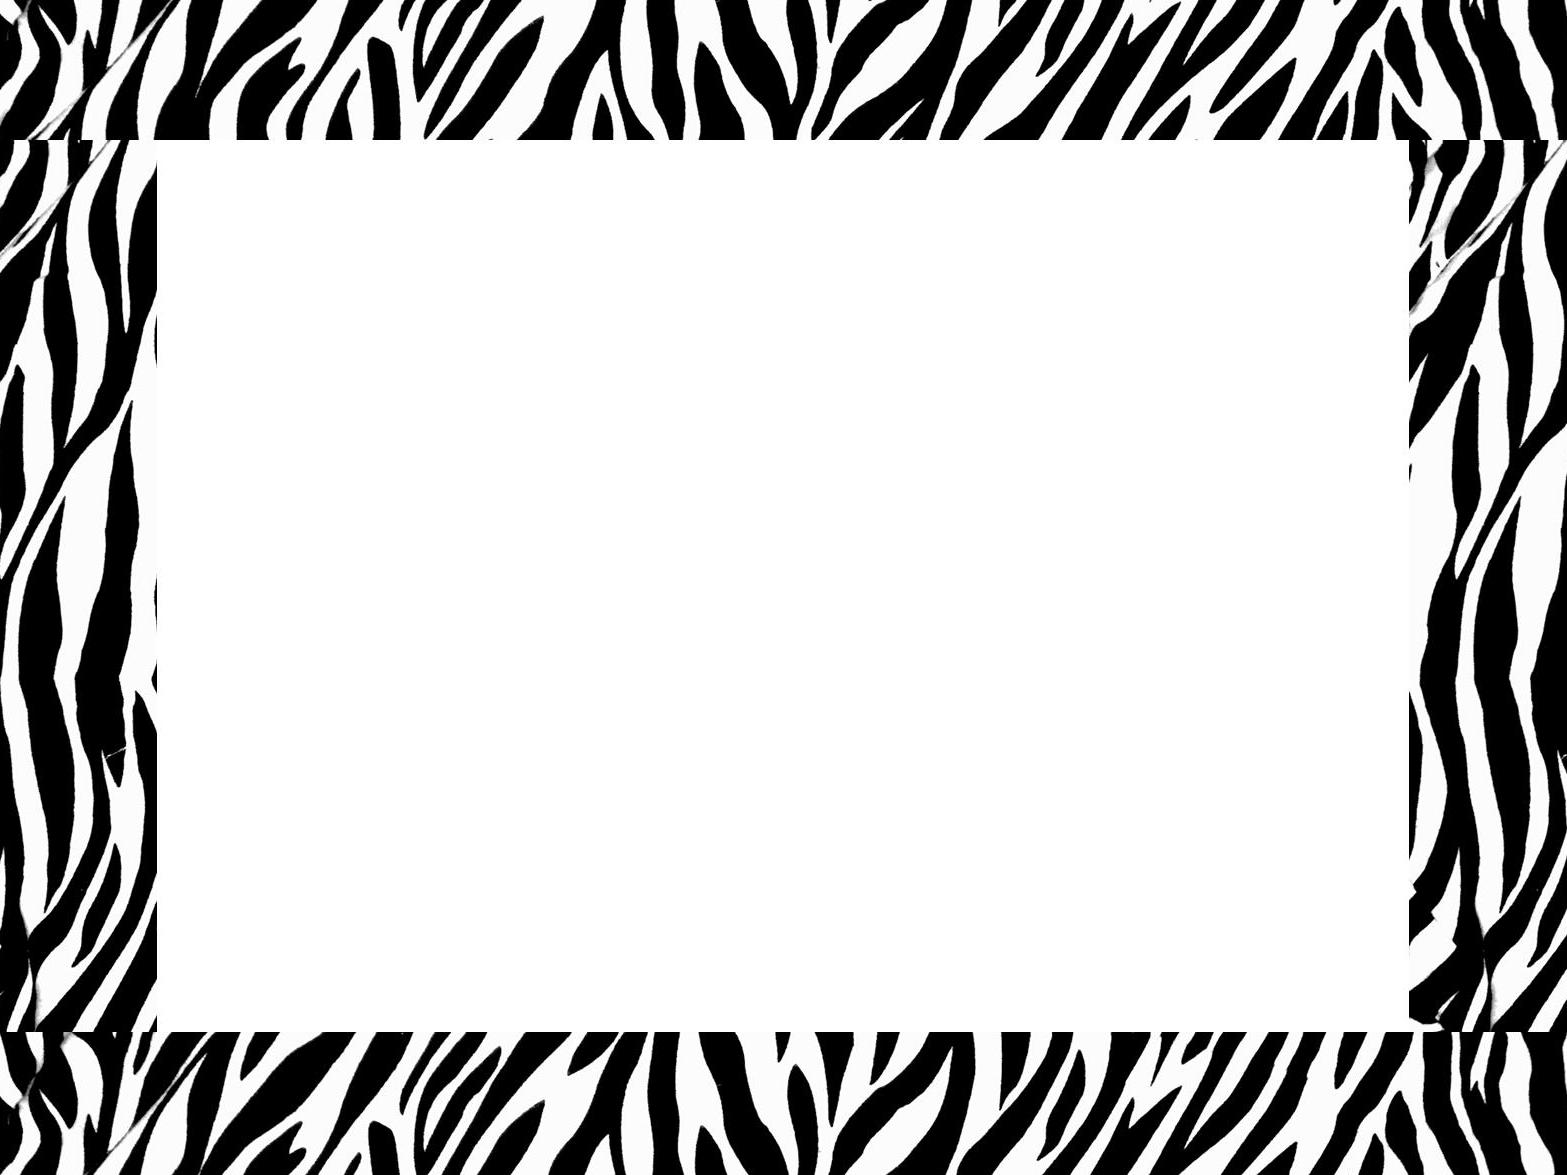 Free Zebra Borders - Cliparts.co